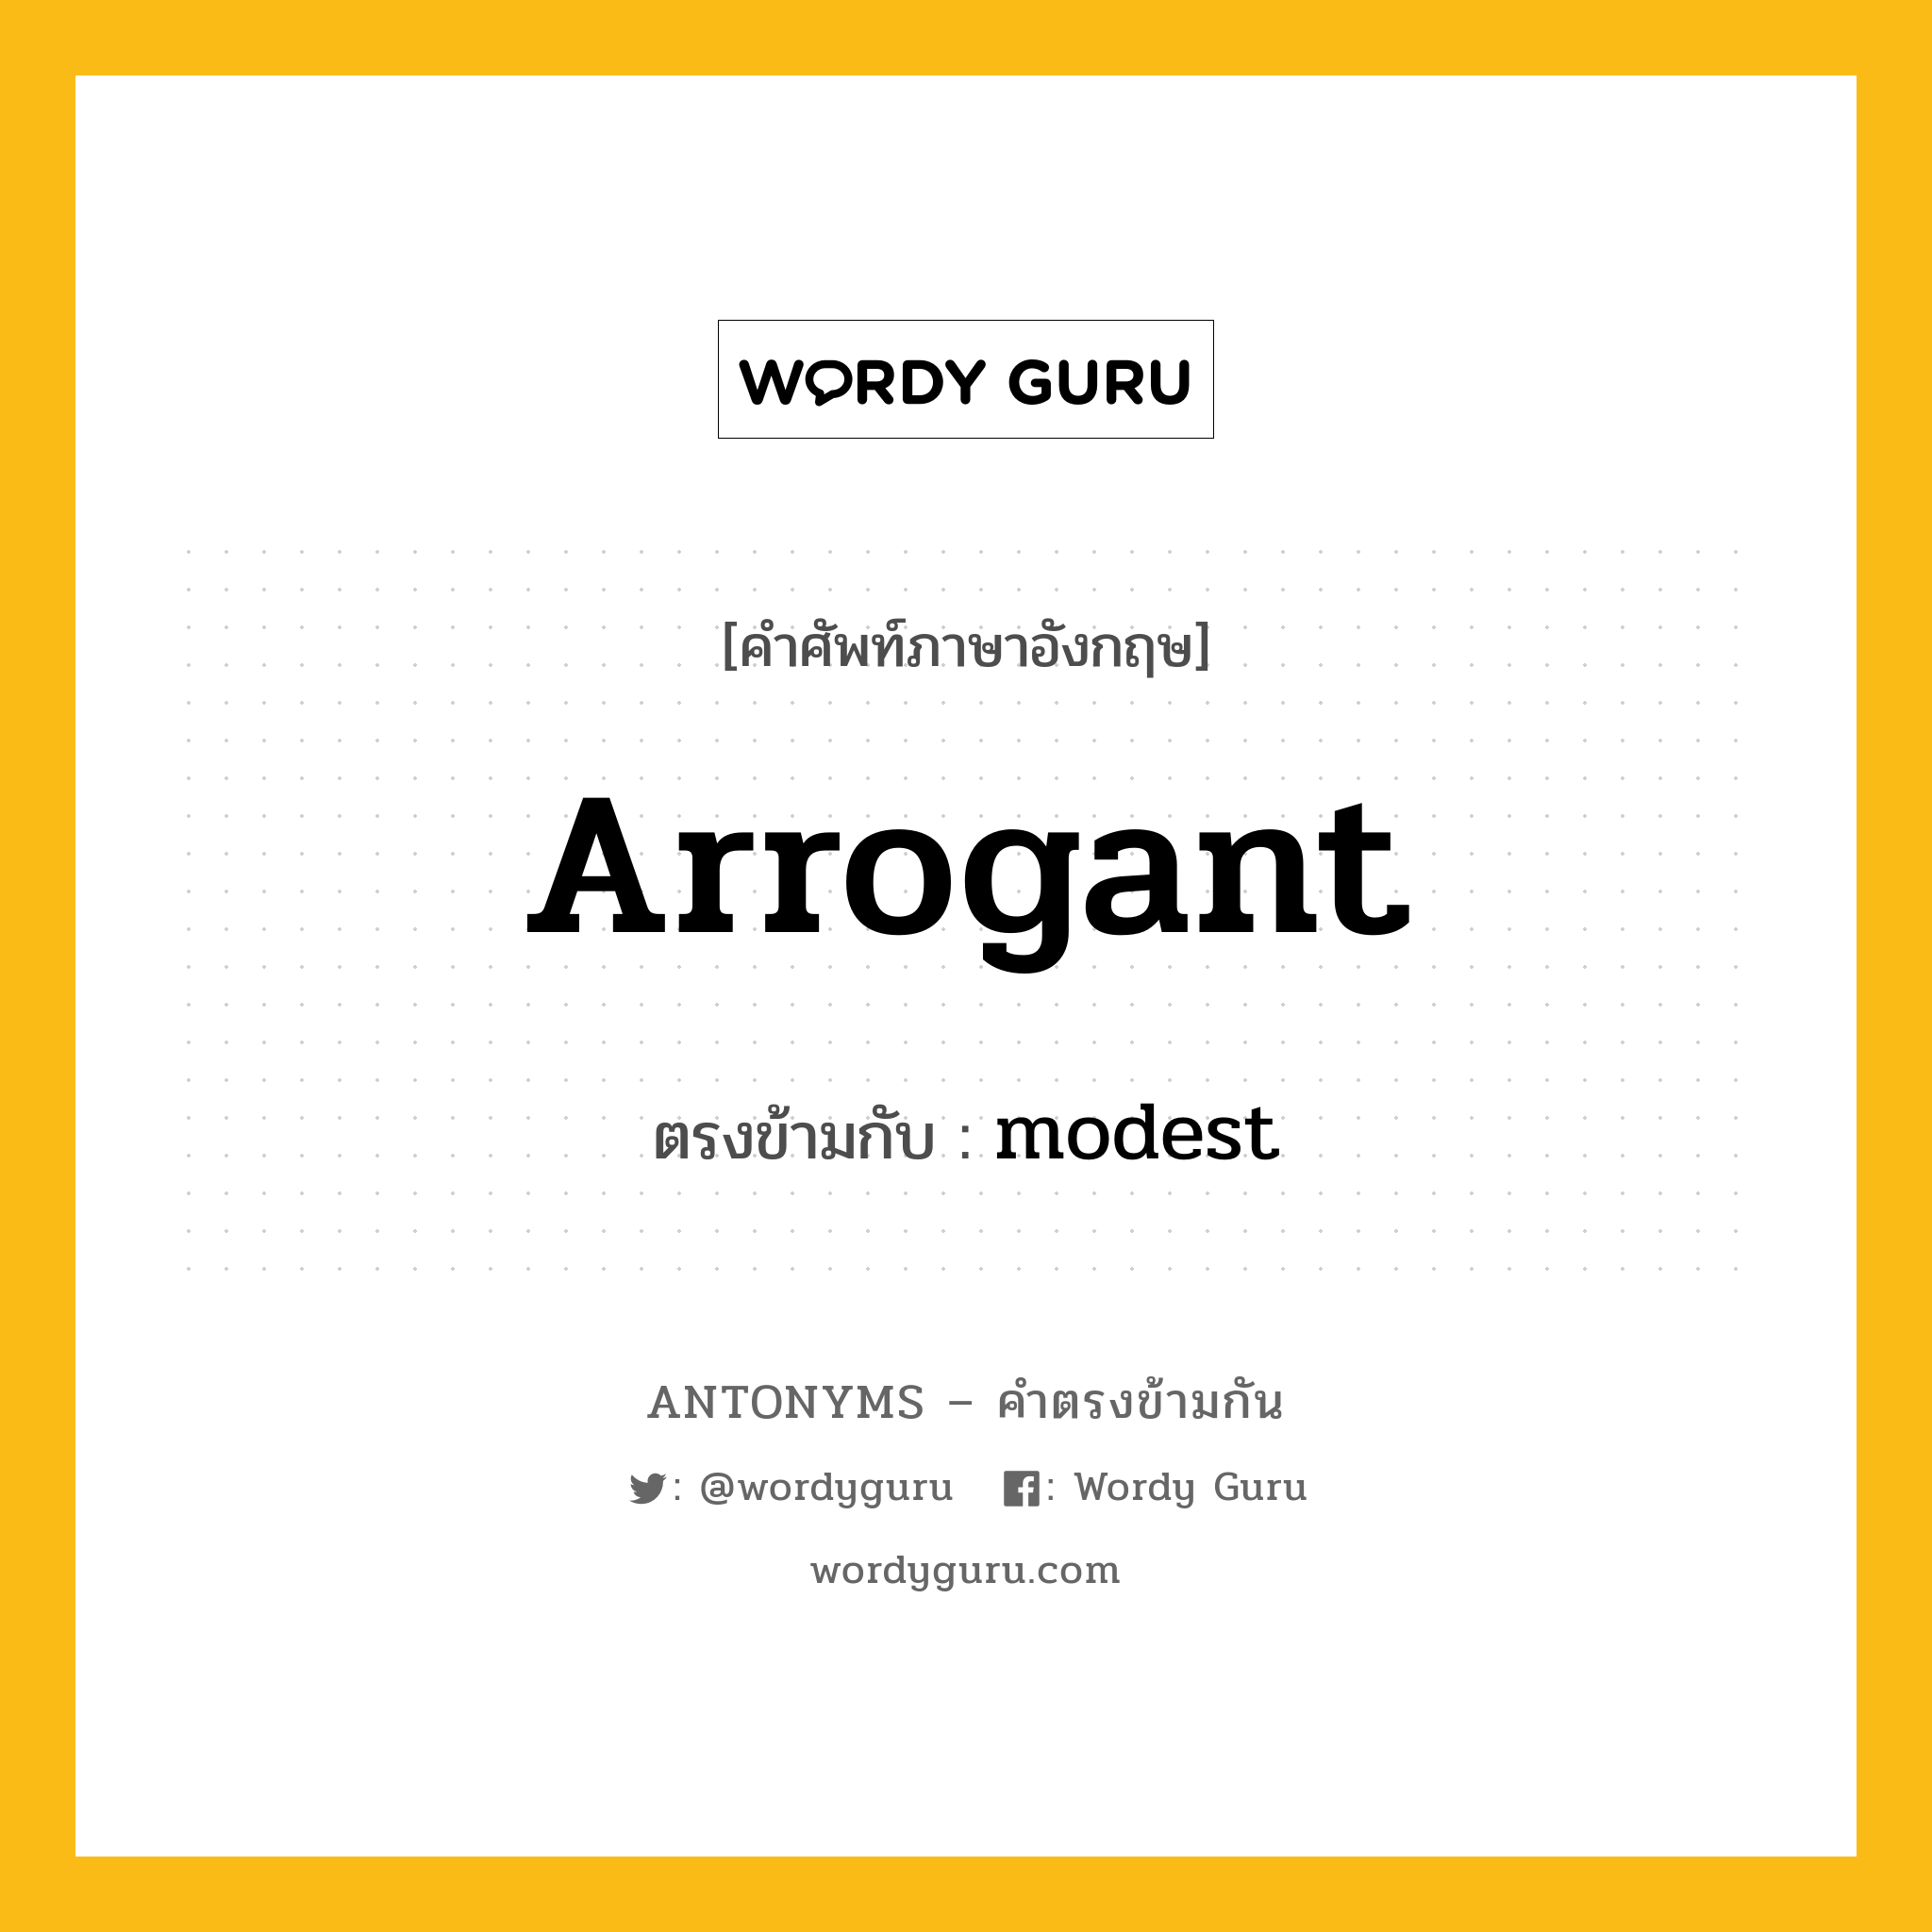 arrogant เป็นคำตรงข้ามกับคำไหนบ้าง?, คำศัพท์ภาษาอังกฤษ arrogant ตรงข้ามกับ modest หมวด modest